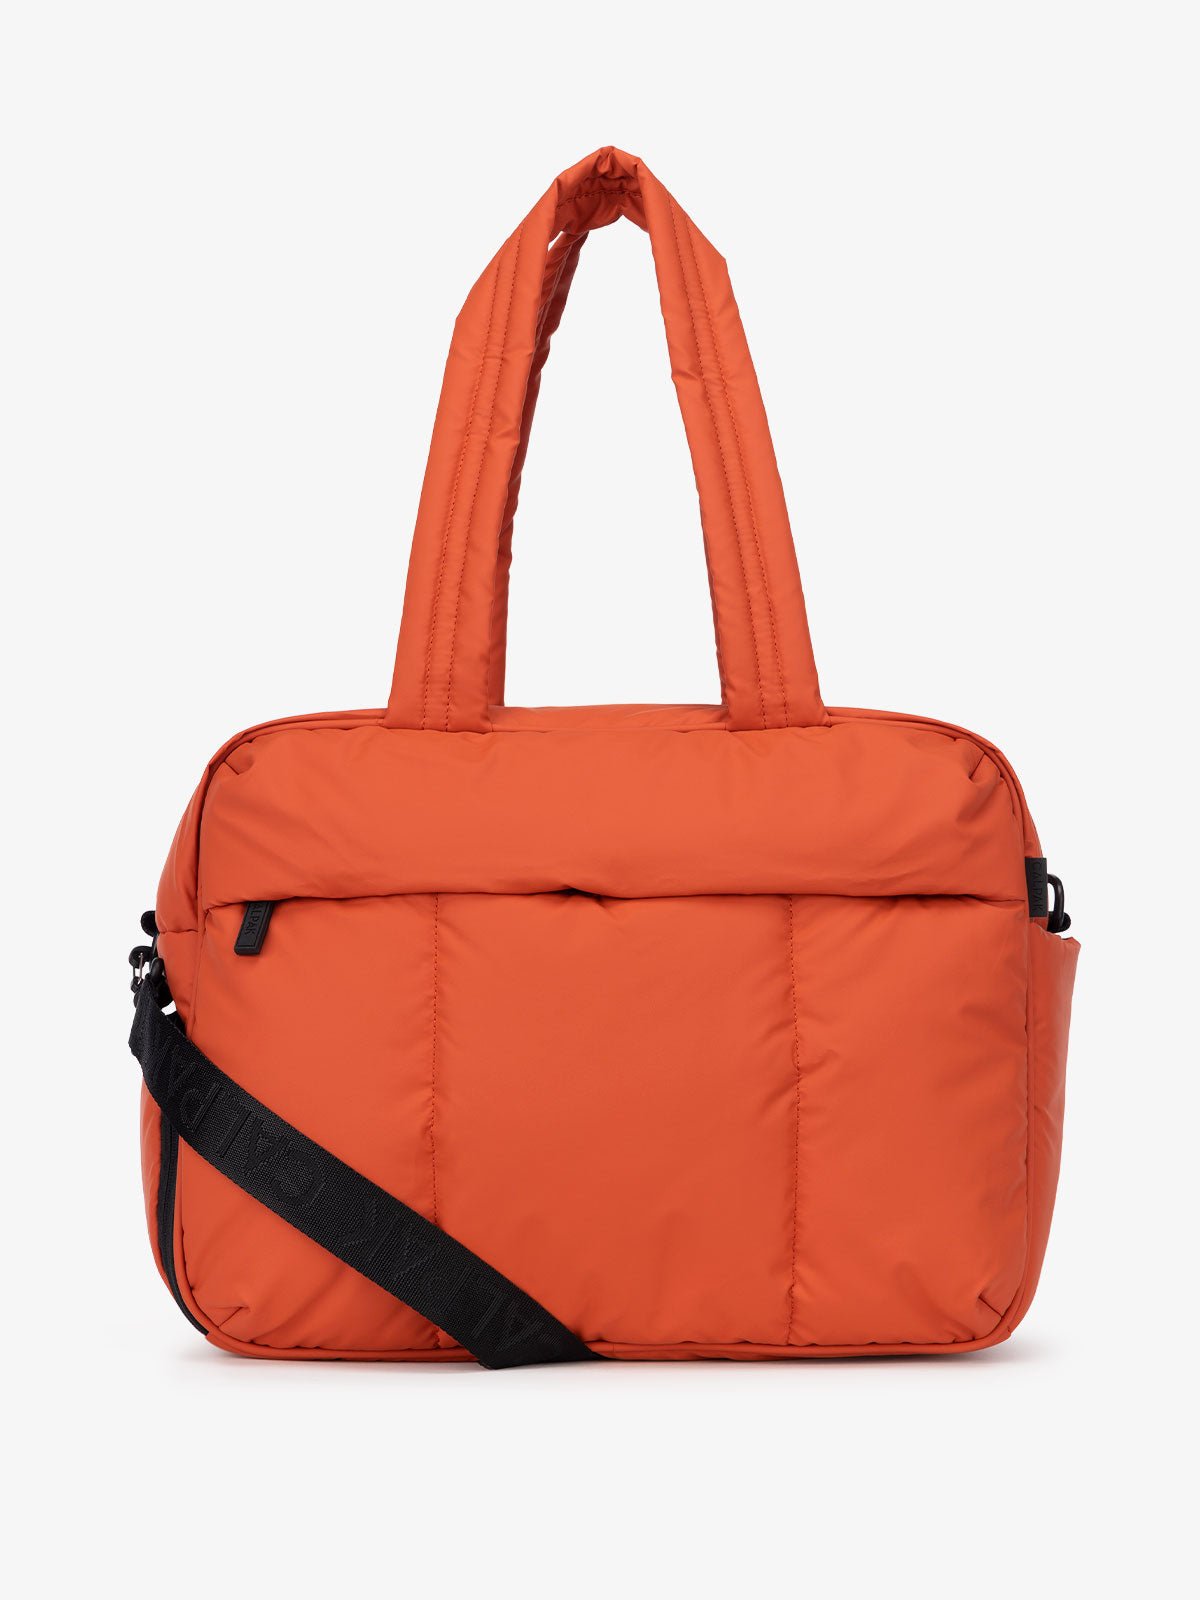 CALPAK duffel bag in red orange